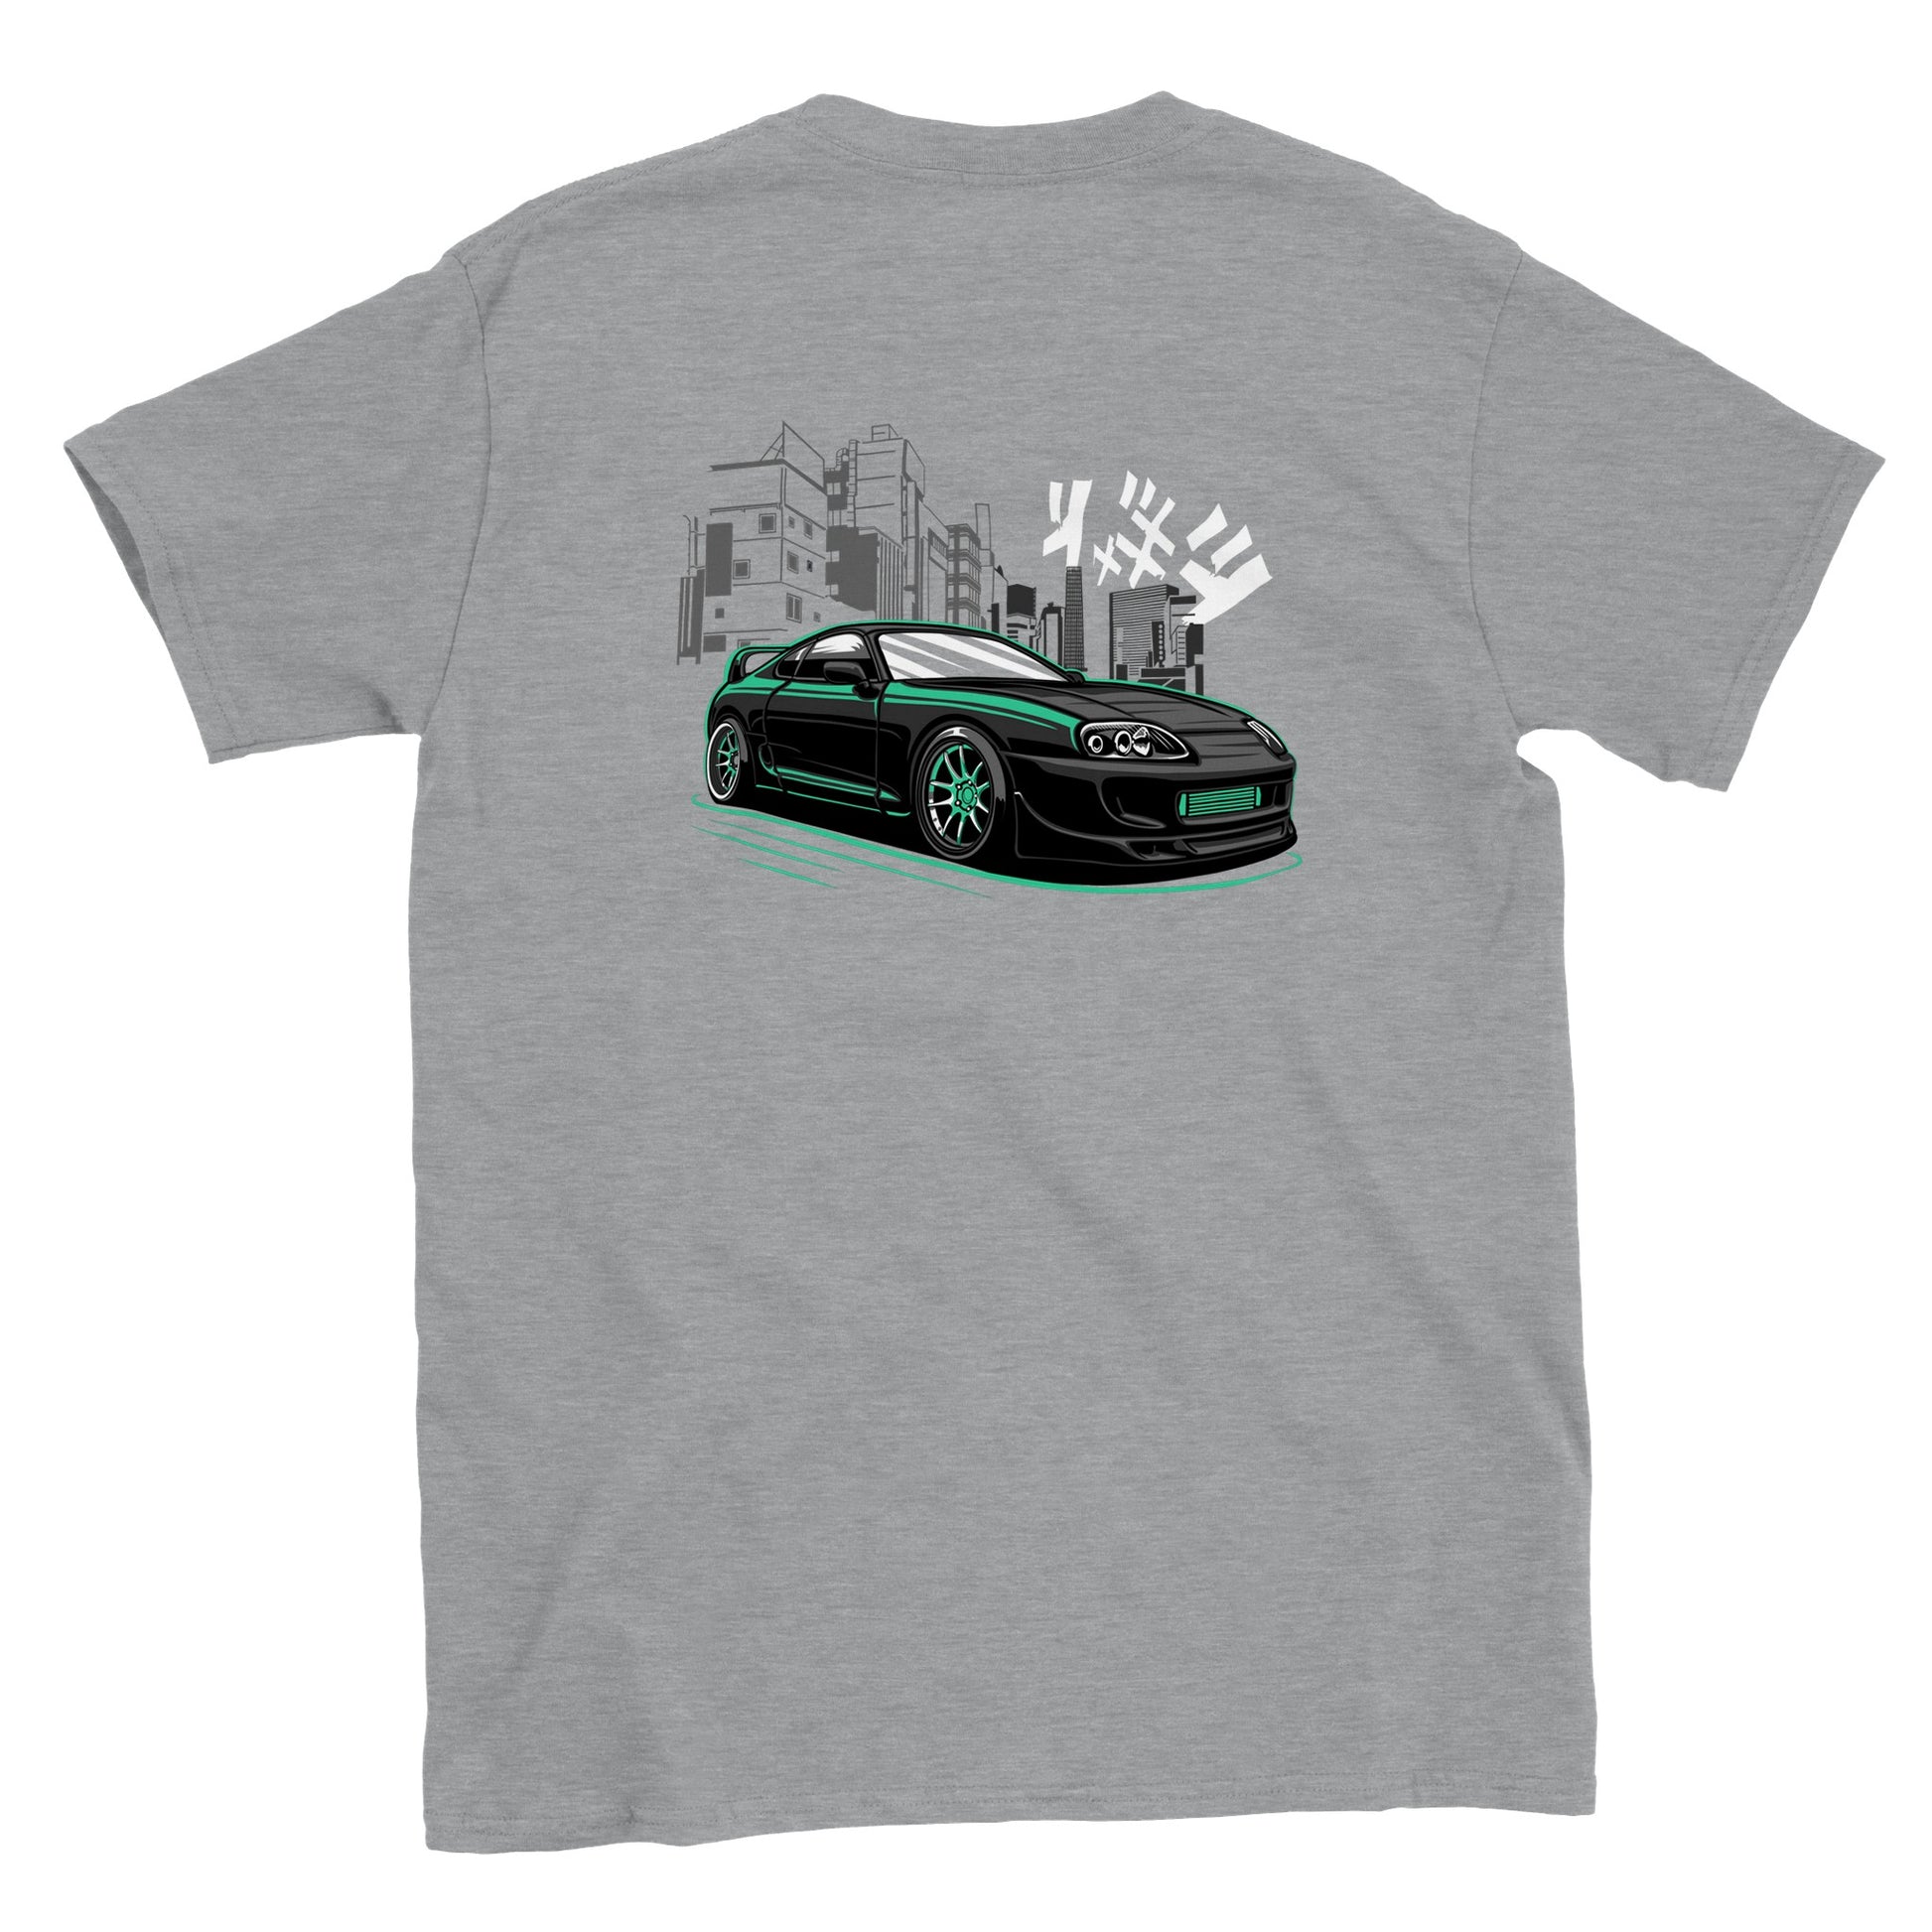 JDM - City Life T-shirt - Mister Snarky's